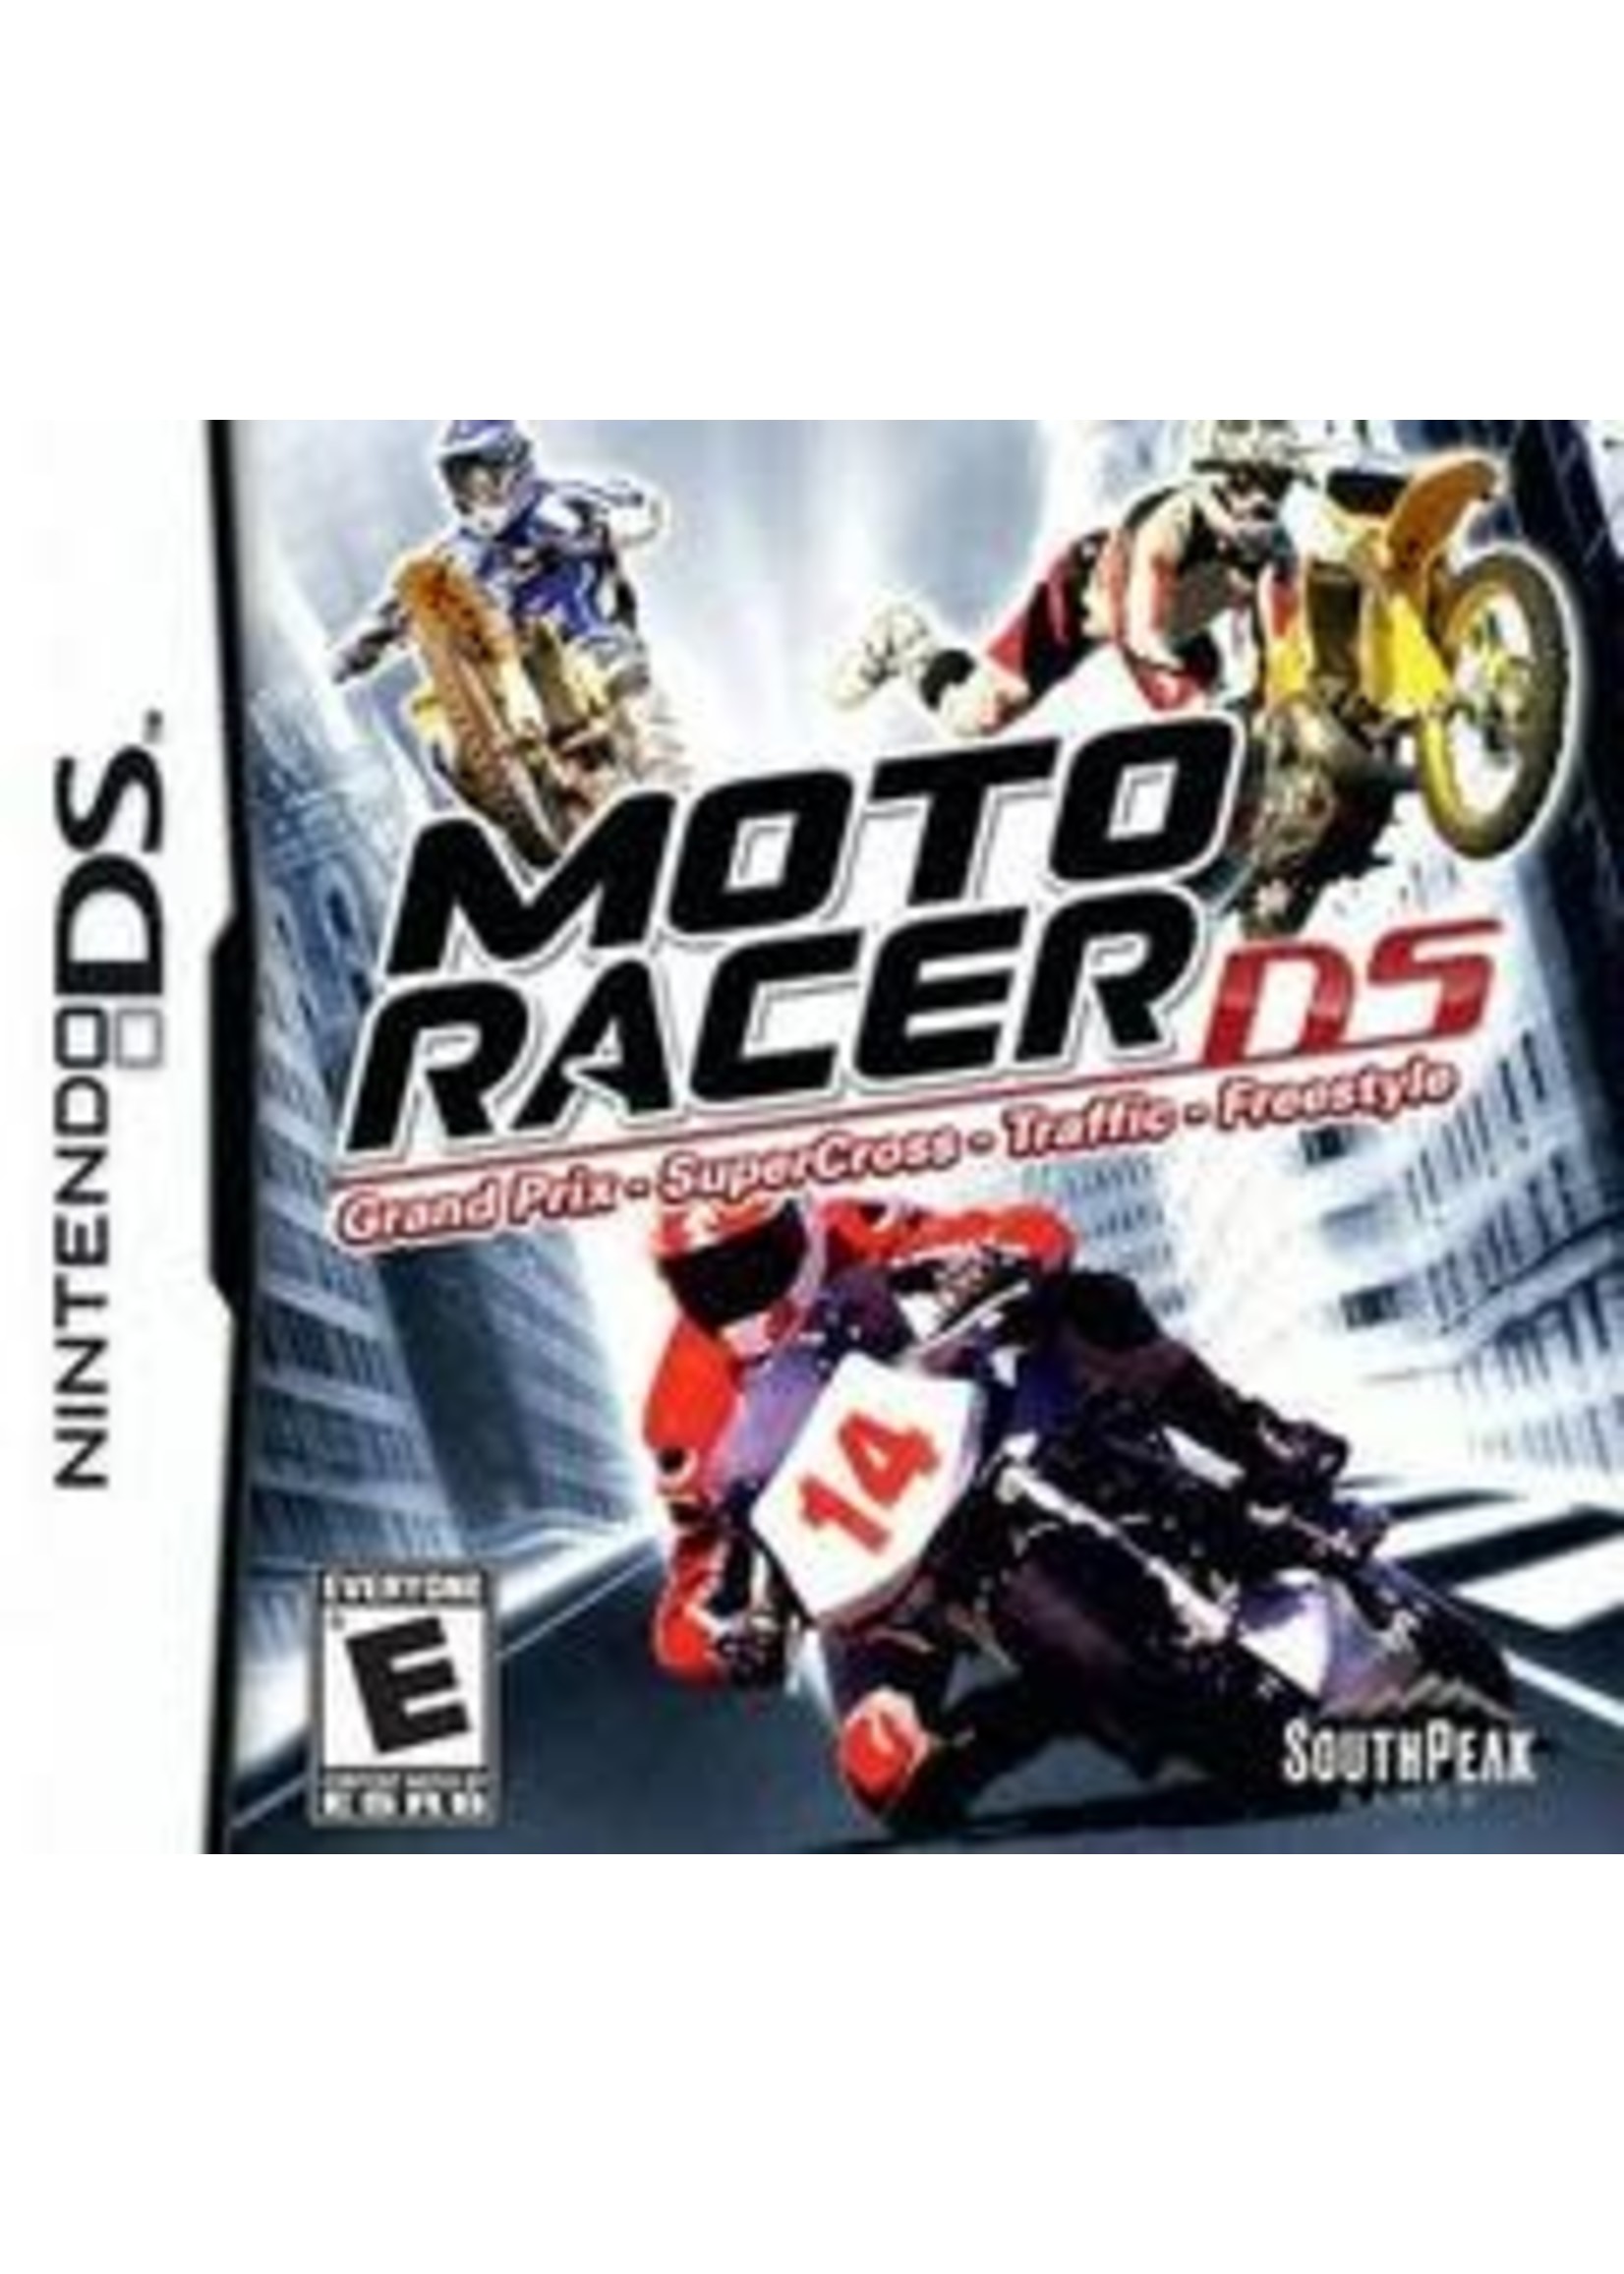 Moto Racer DS Nintendo DS